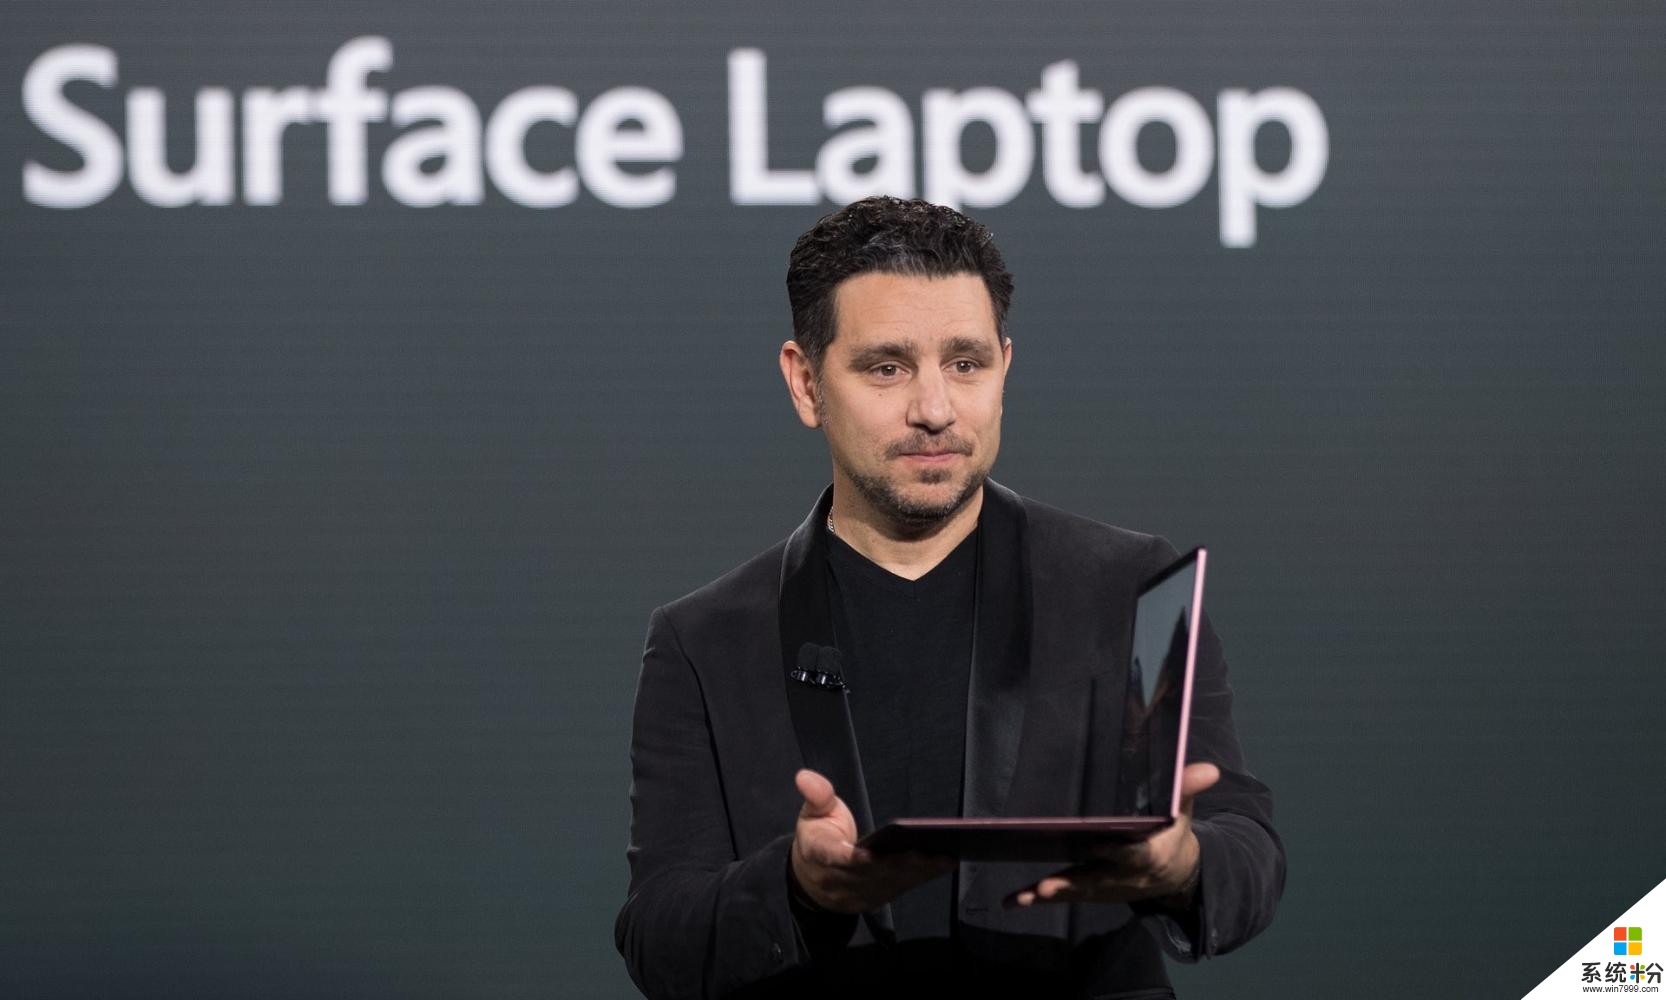 微软推出Surface笔记本电脑和Windows 10 S, 以竞争MacBook Pro(2)